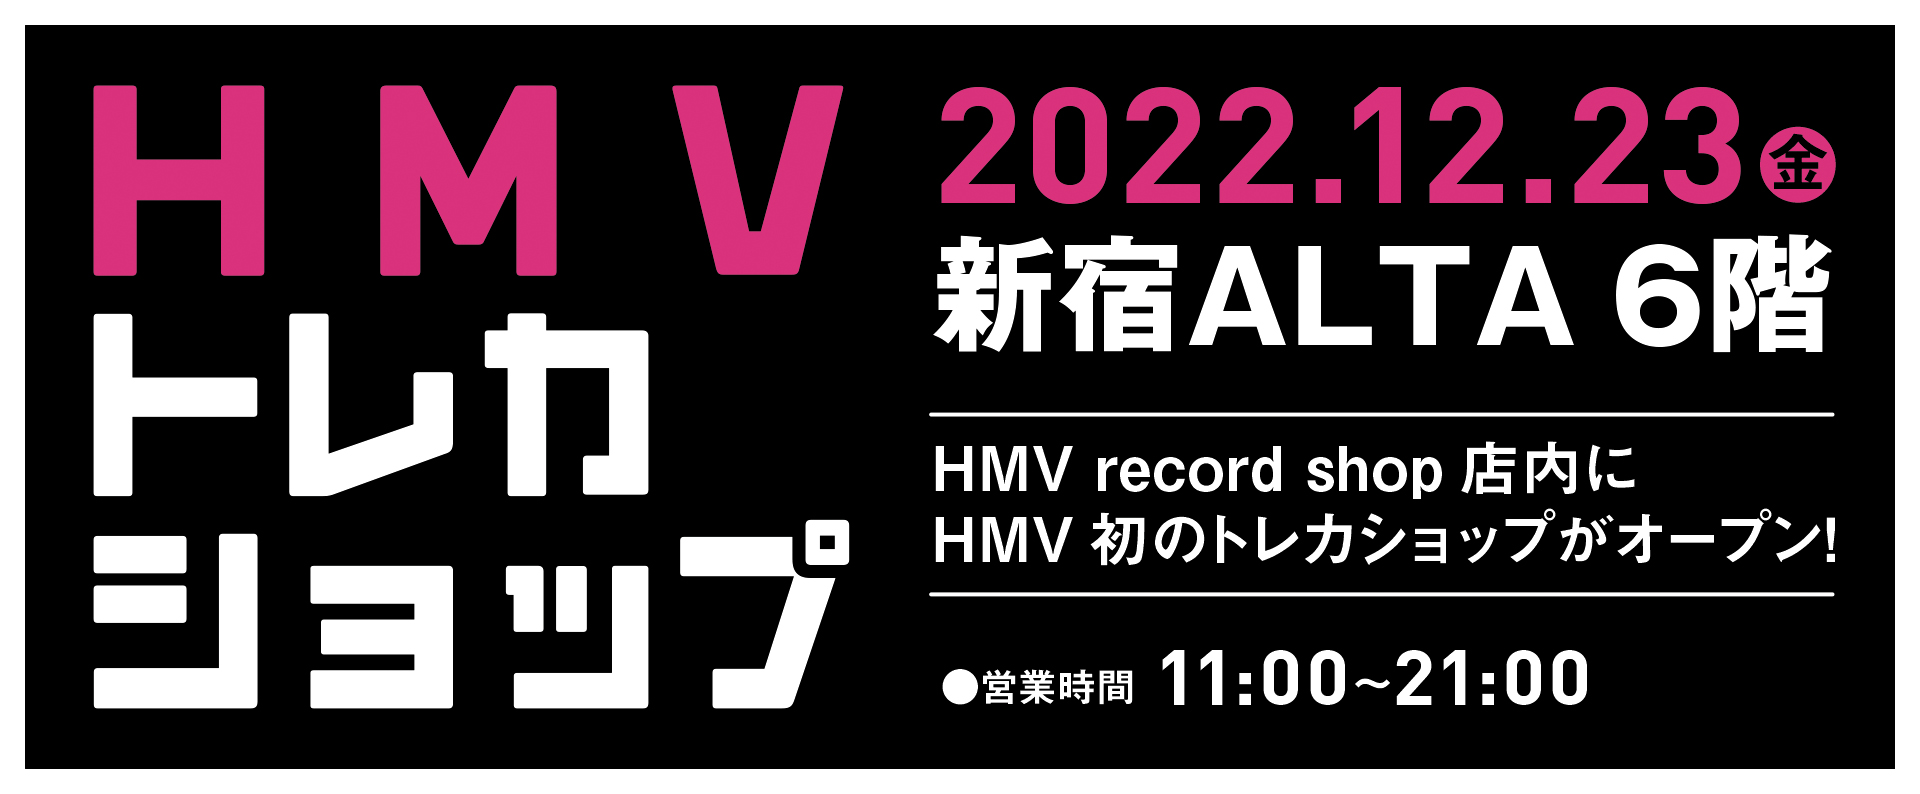 HMV_kaitori_webads-yoko_CD_ver1_3